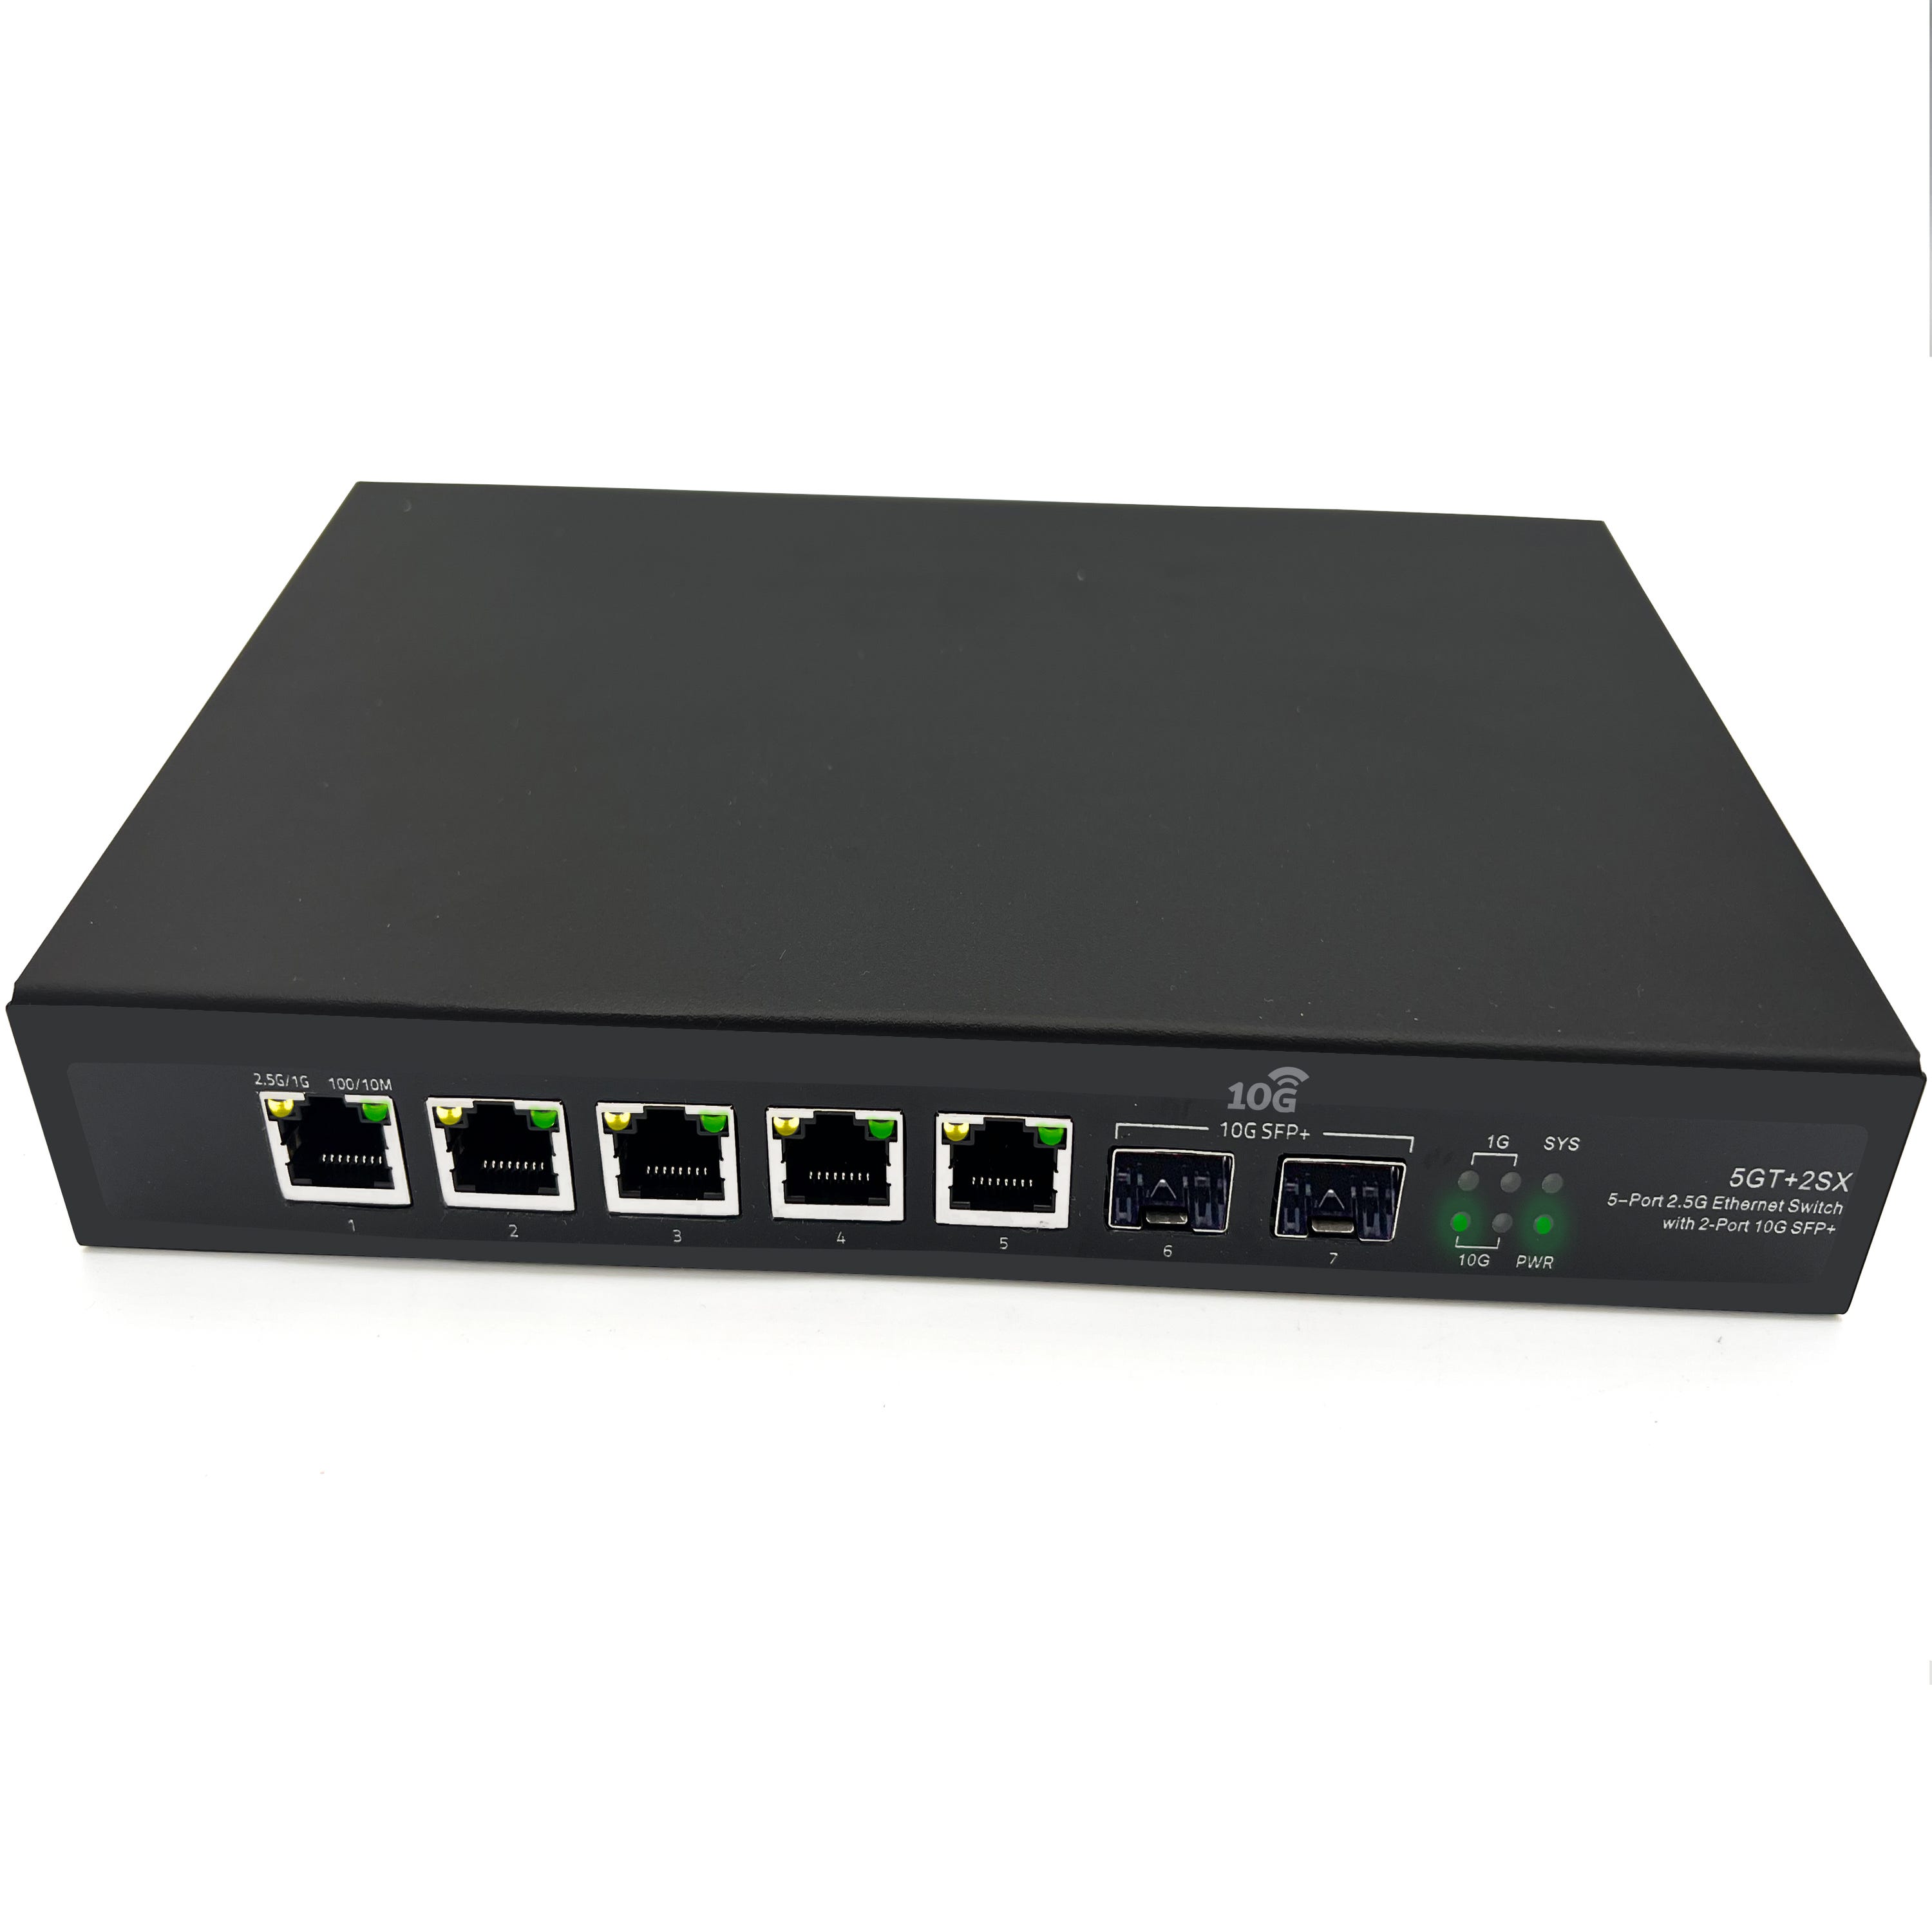 Switch réseau,Commutateur Ethernet 6 ports 10-100M,Fiber optique,2